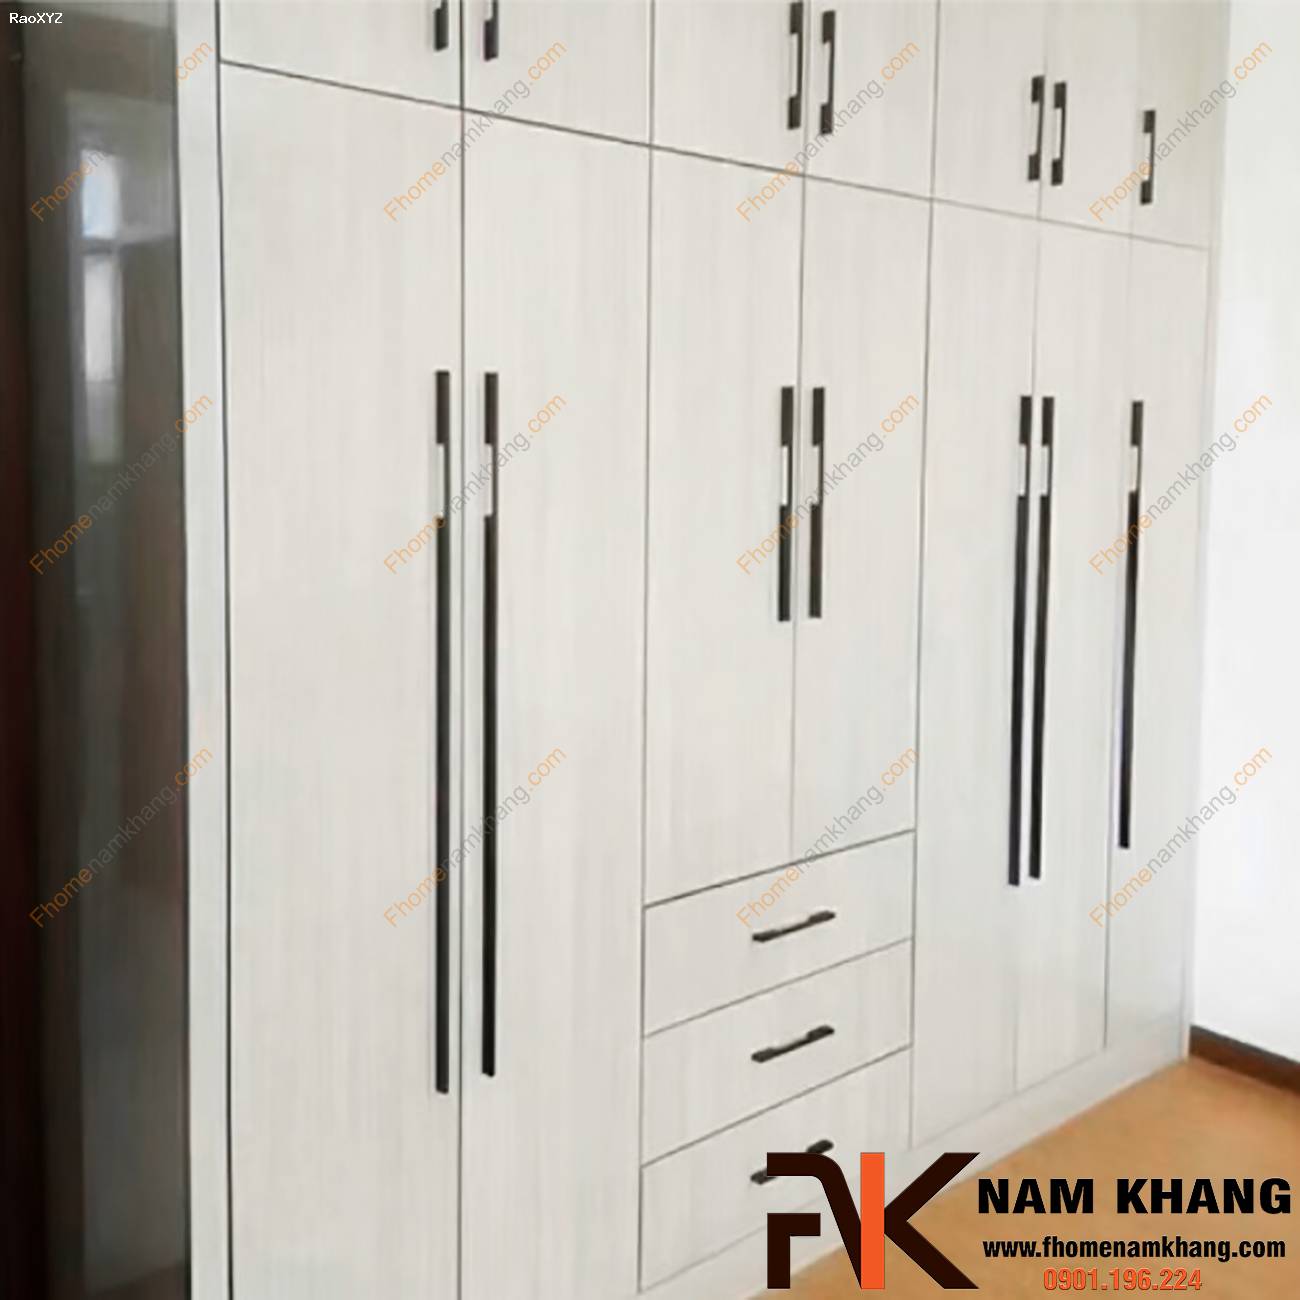 Tay nắm tủ quần áo dạng thanh hiện đại NK260 | F-Home NamKhang